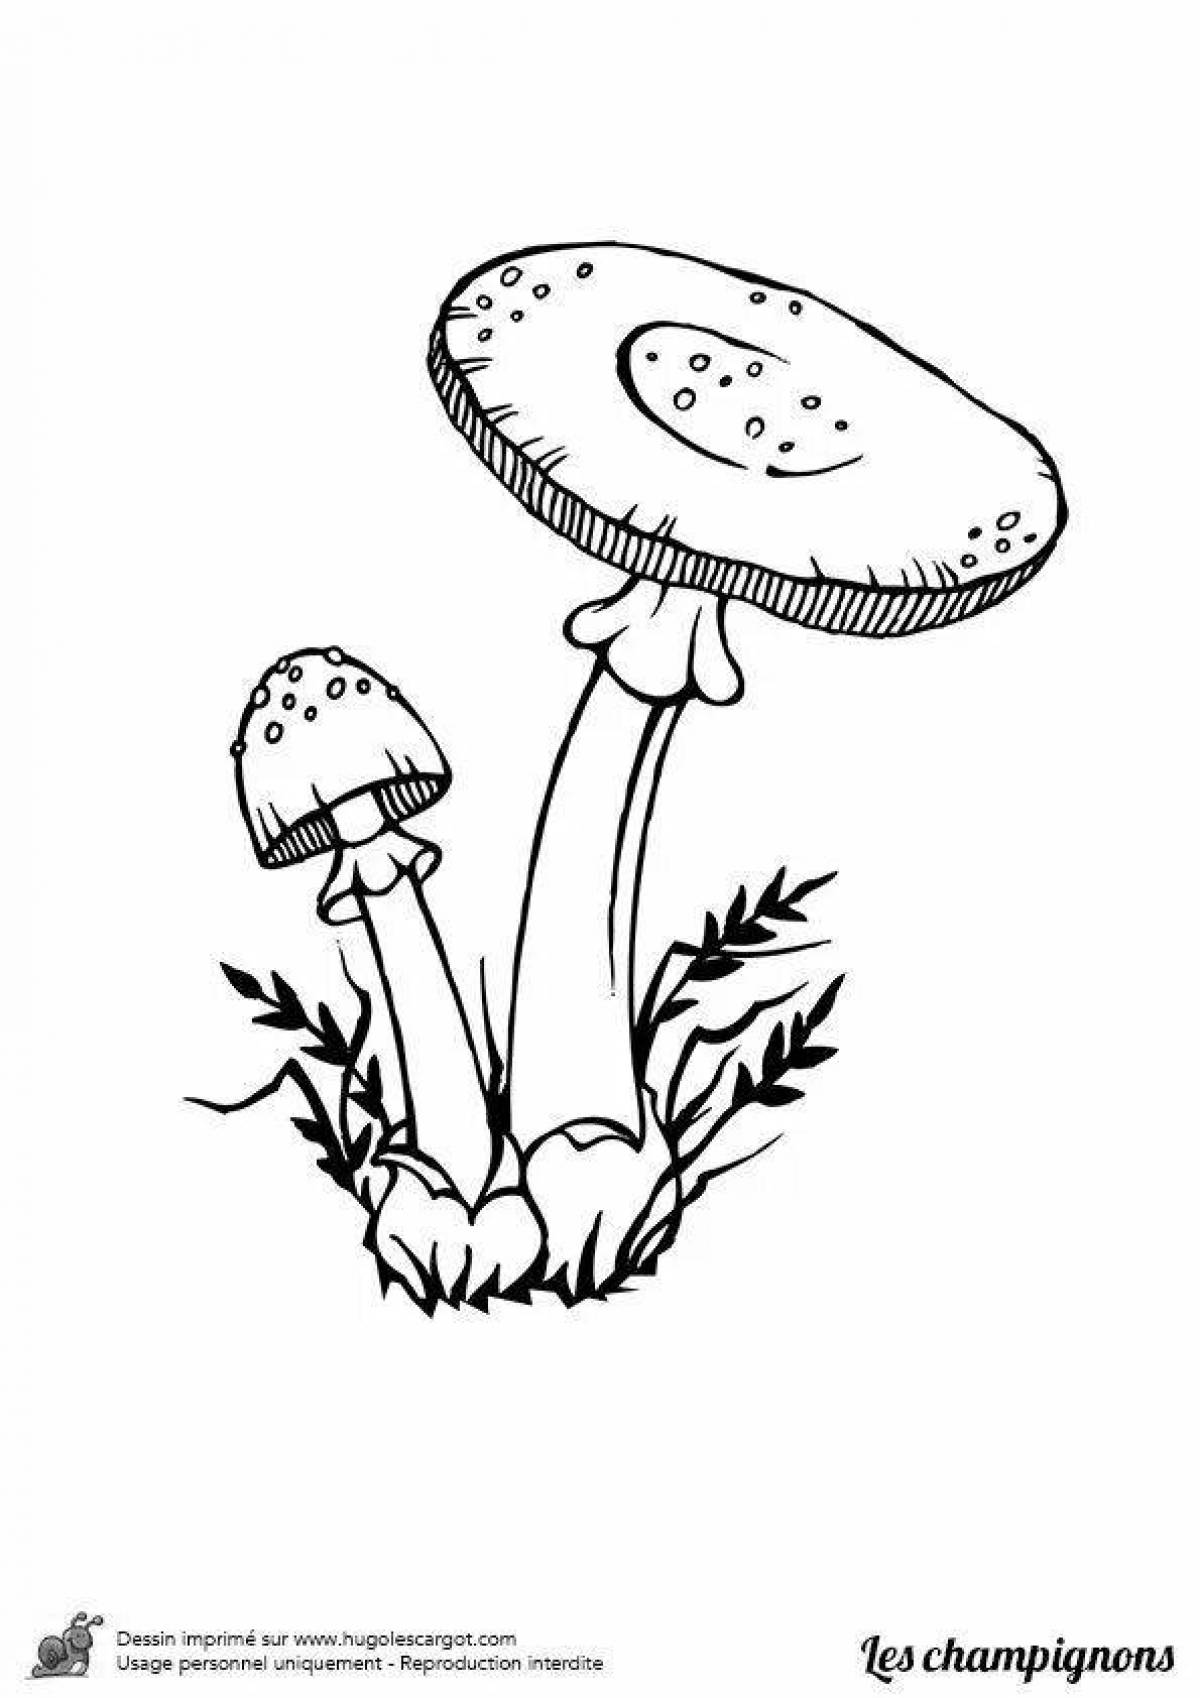 Фото Радиантная раскраска ядовитые грибы